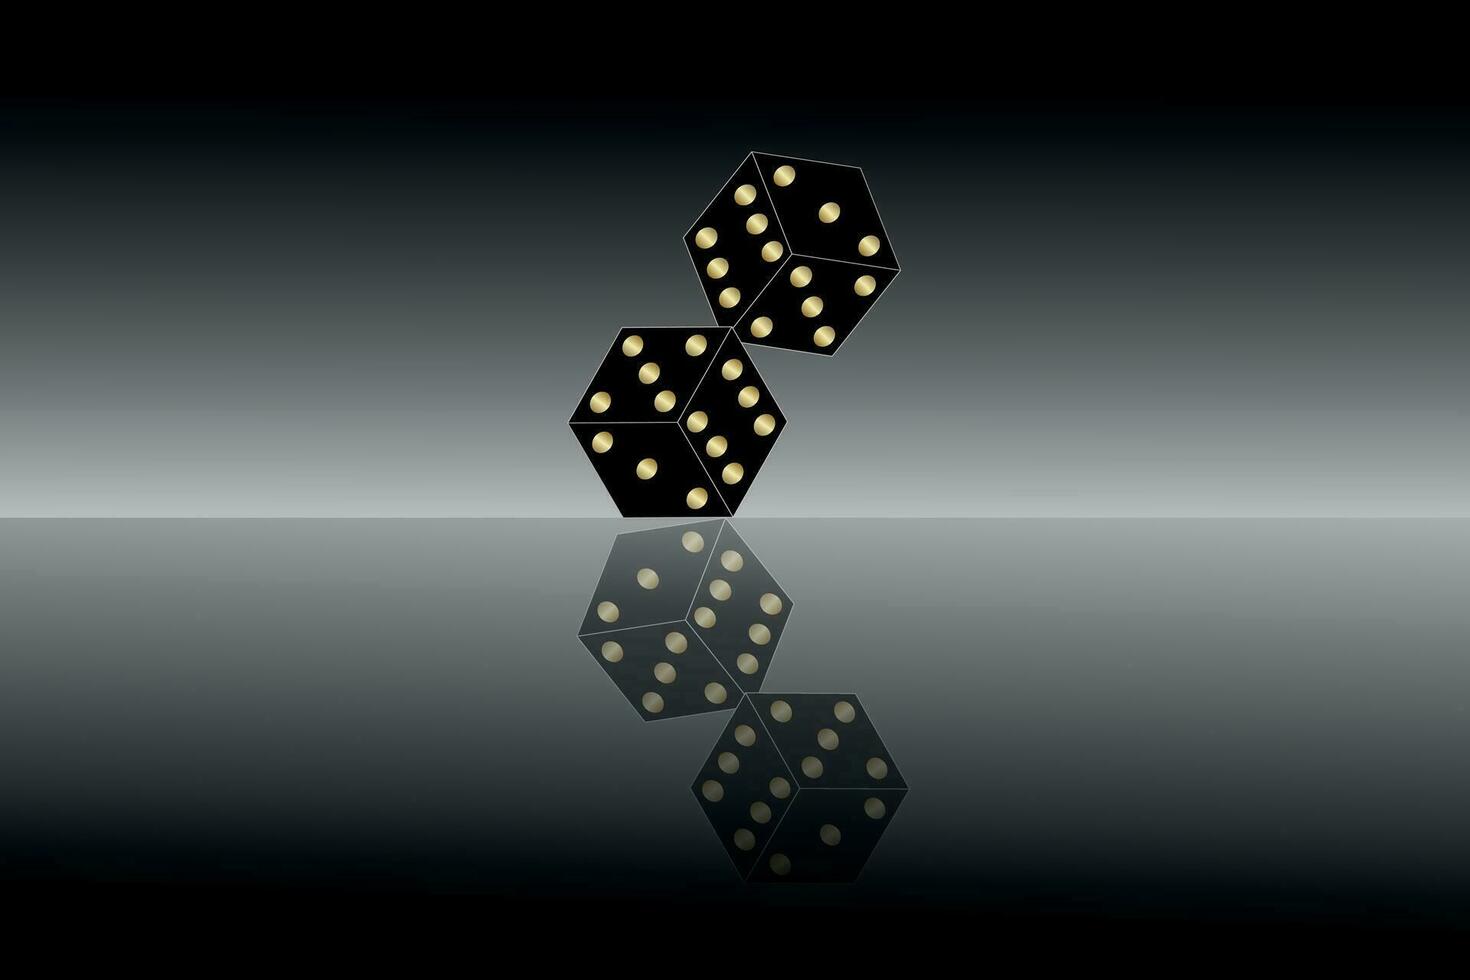 dobbelstenen.casino spandoek. zwart casino Dobbelsteen weerspiegeld Aan een glas achtergrond. Dobbelsteen voor gokken, voor roulette of poker. het gokken concept. vector illustratie.